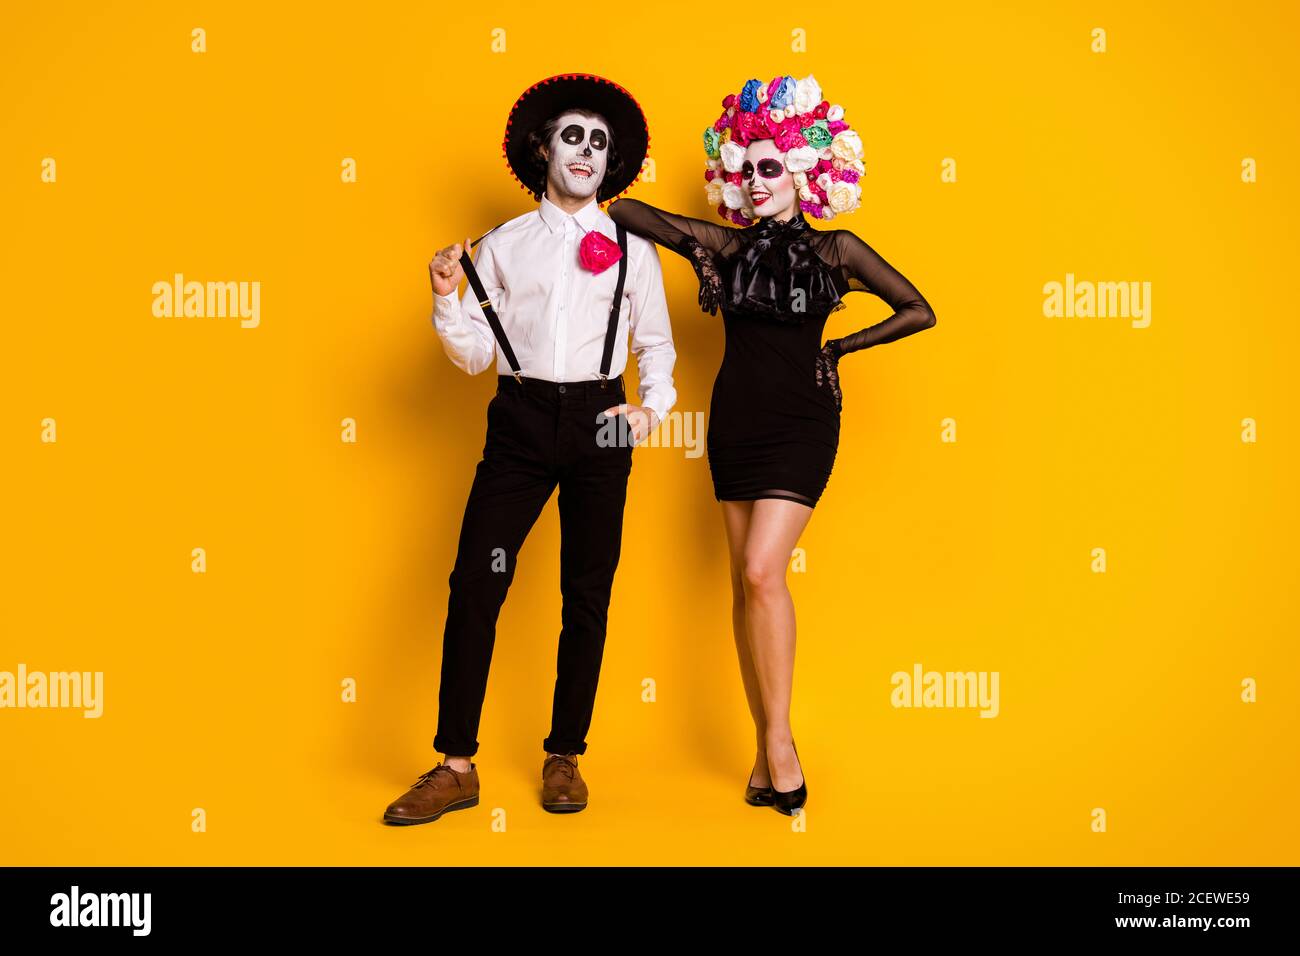 Vue sur toute la longueur de son corps elle joli-look glamour gai couple posant calavera fête carnaval boîte de nuit événement isolé lumineux Banque D'Images